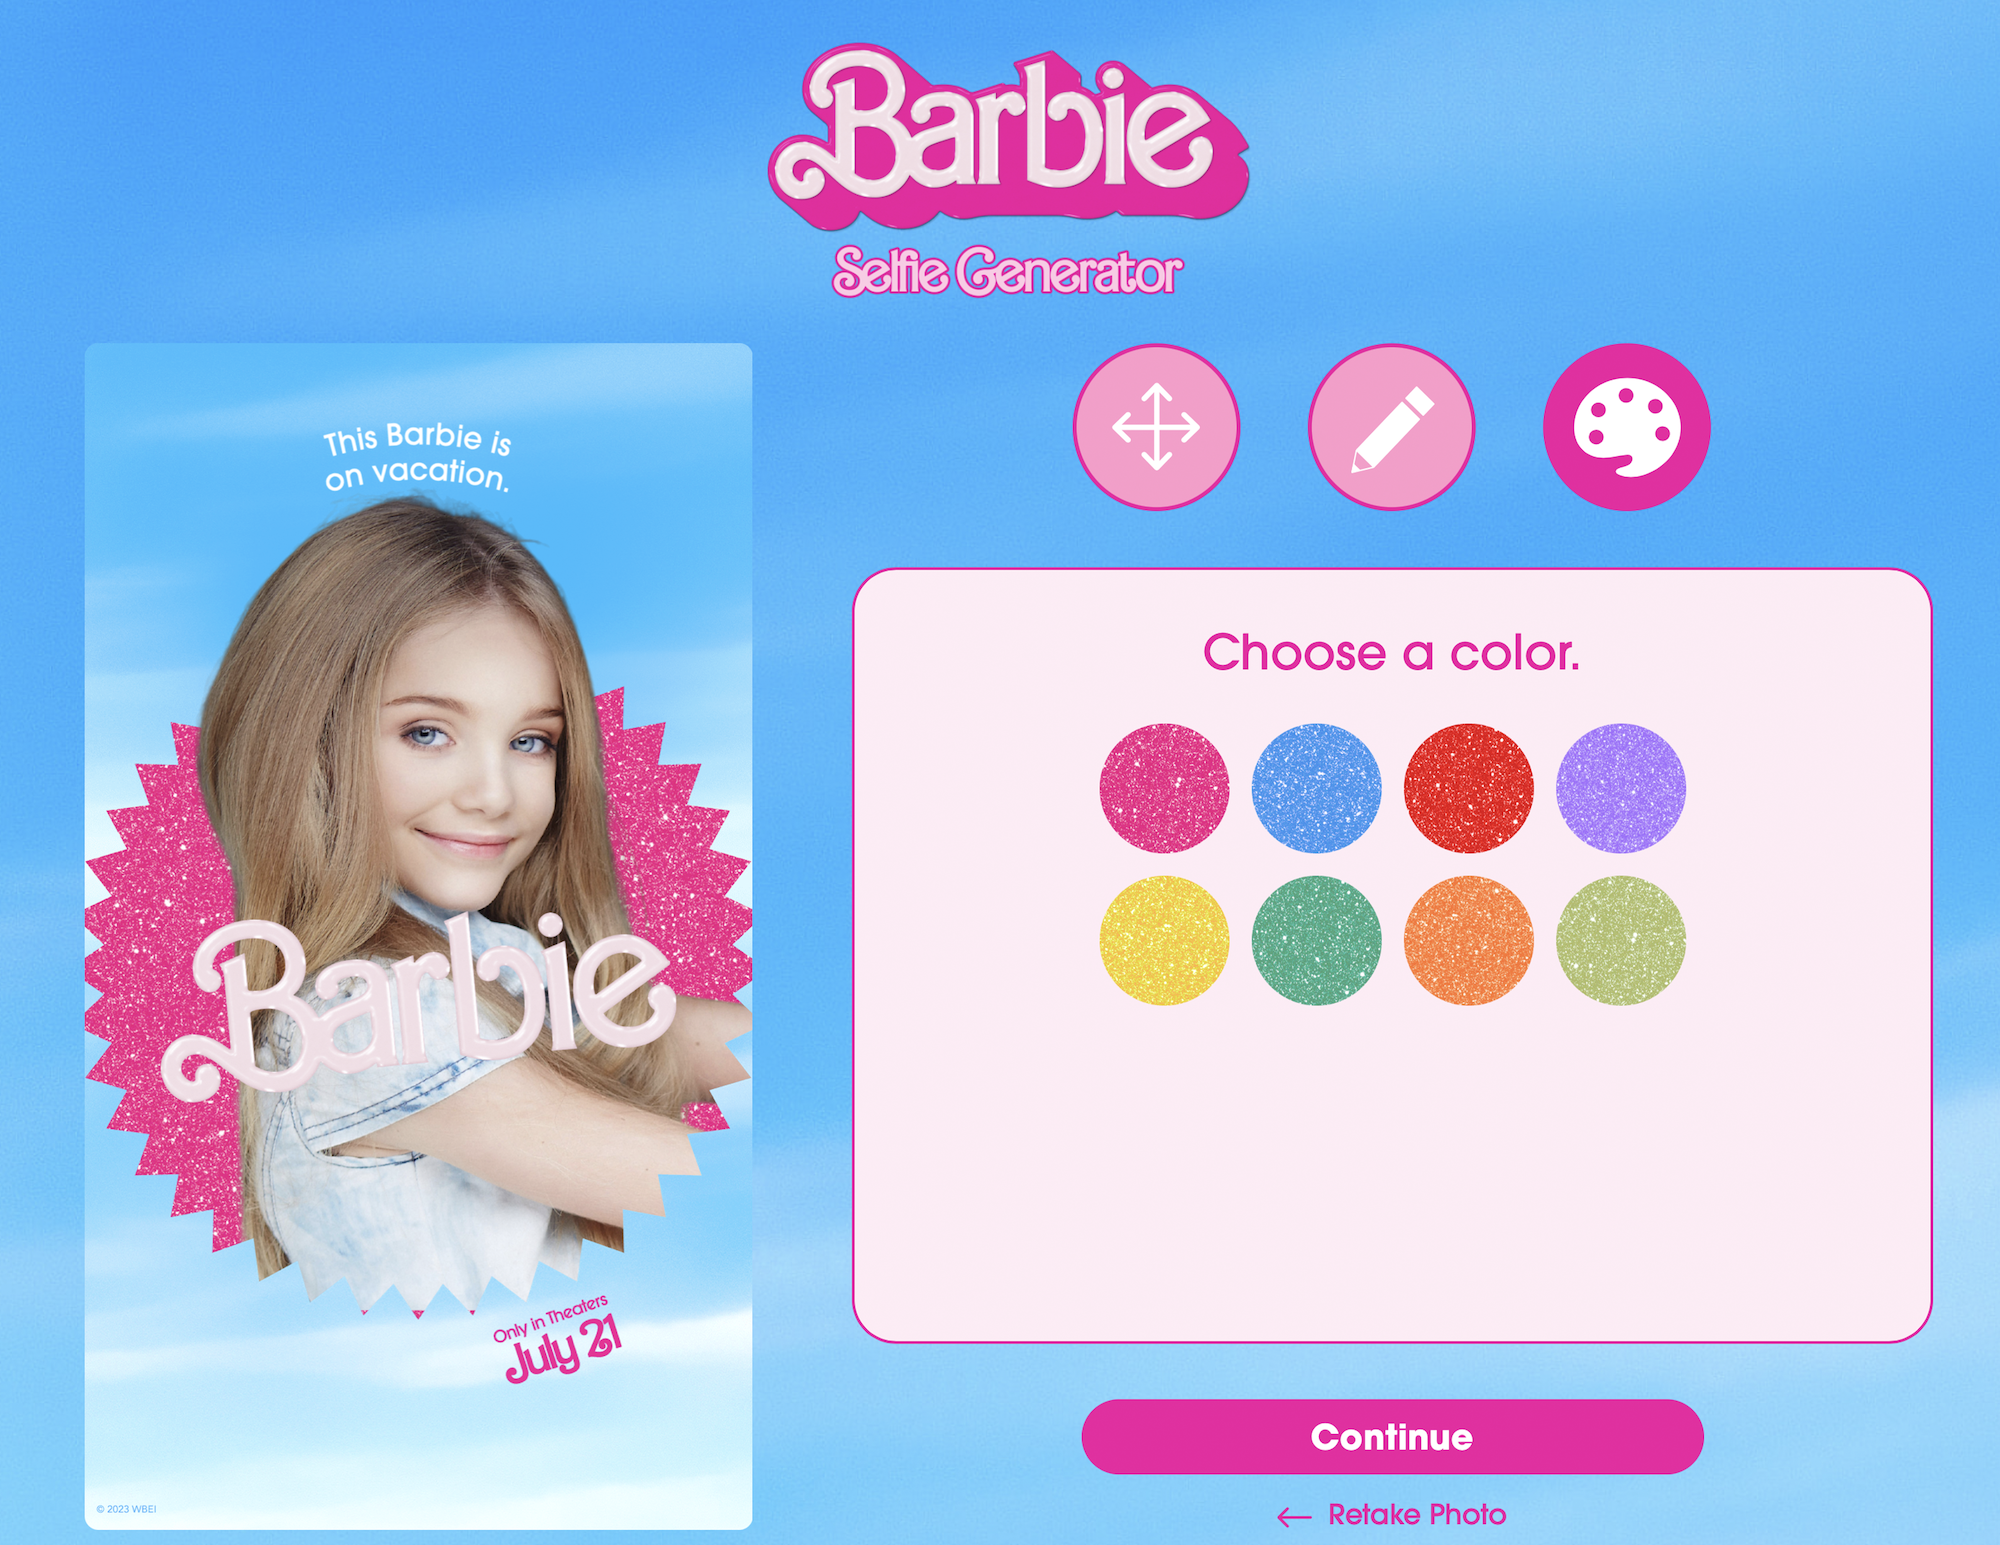 barbie-selfie-movie-poster